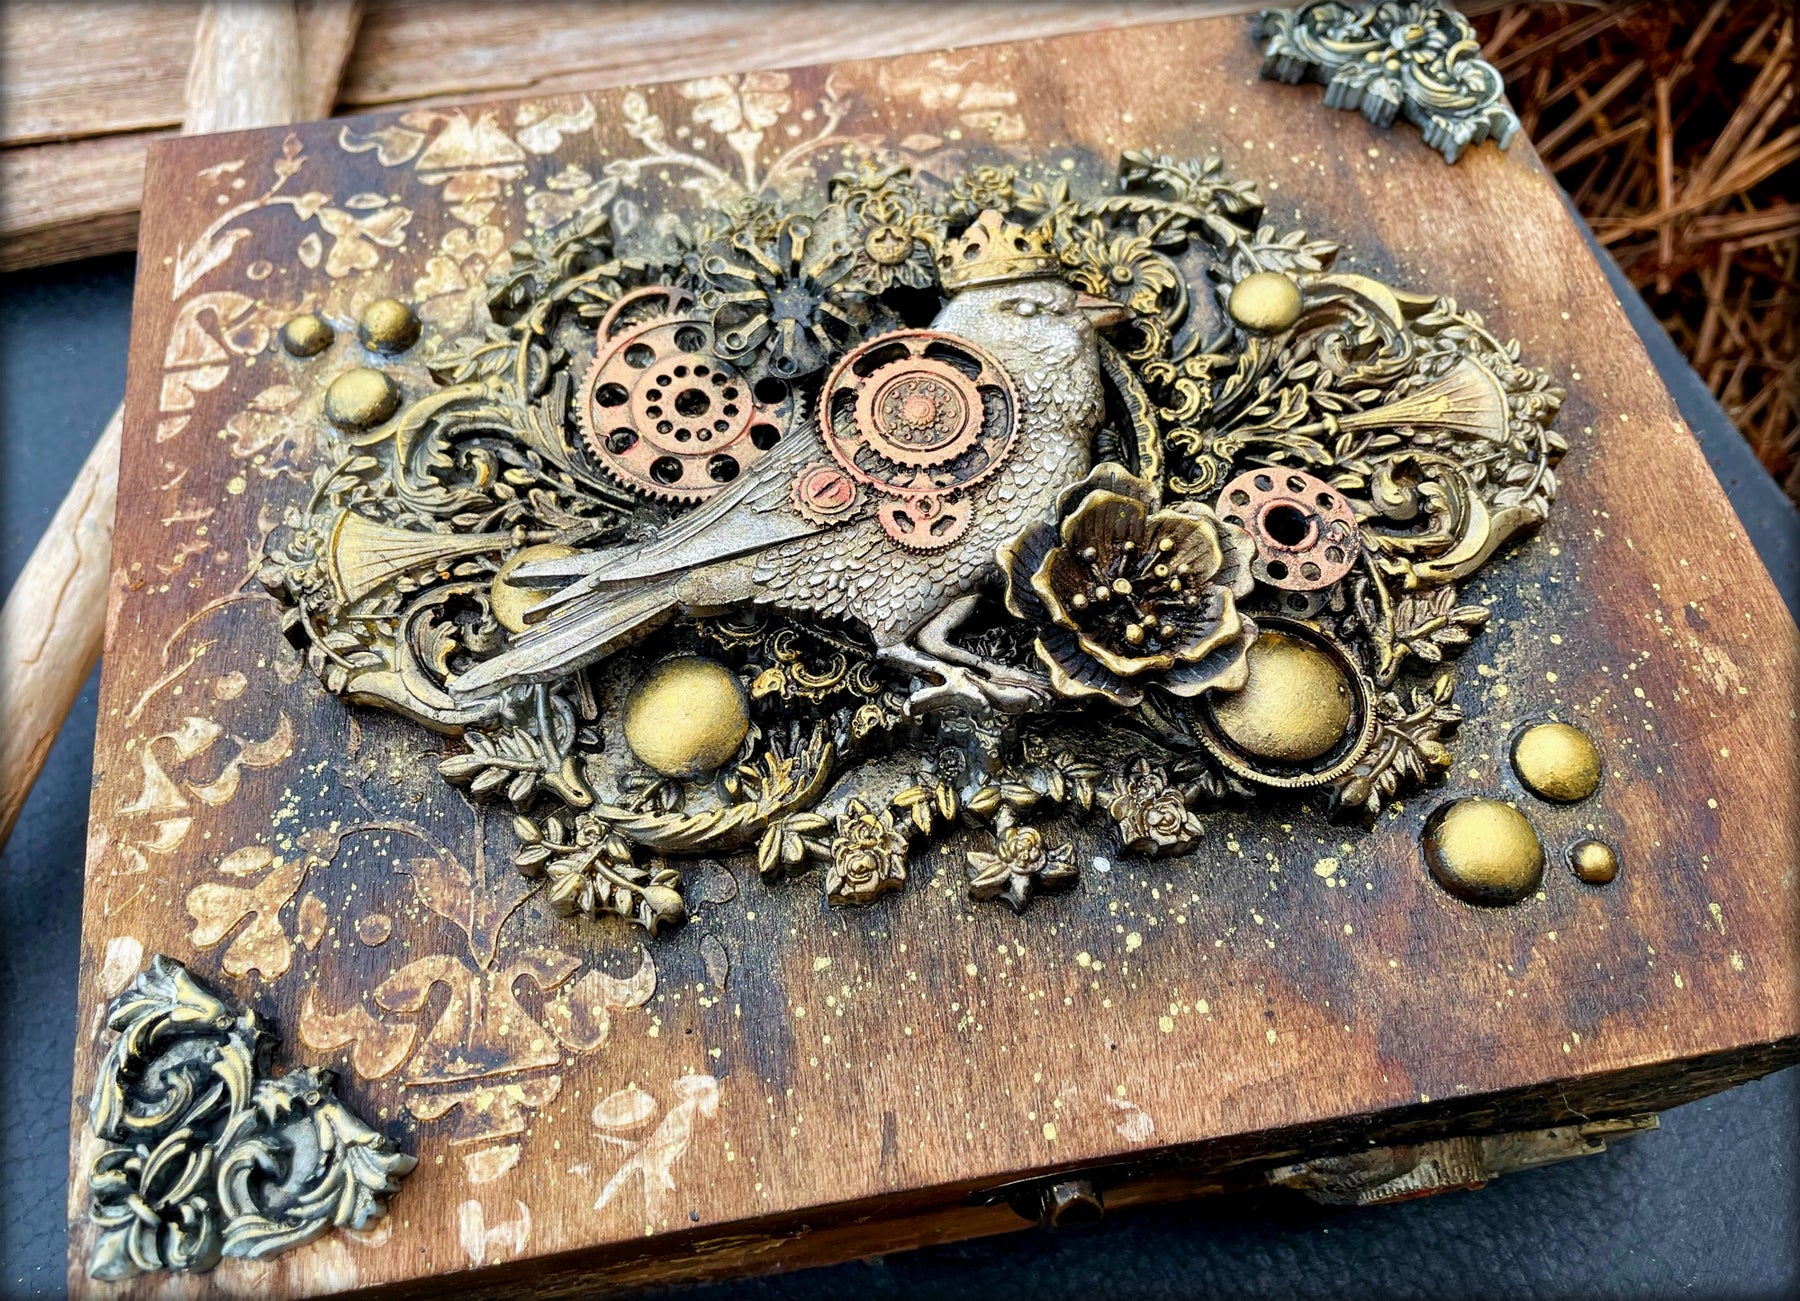 Vintage steampunk inspired treasure box: By Louise Crosbie.